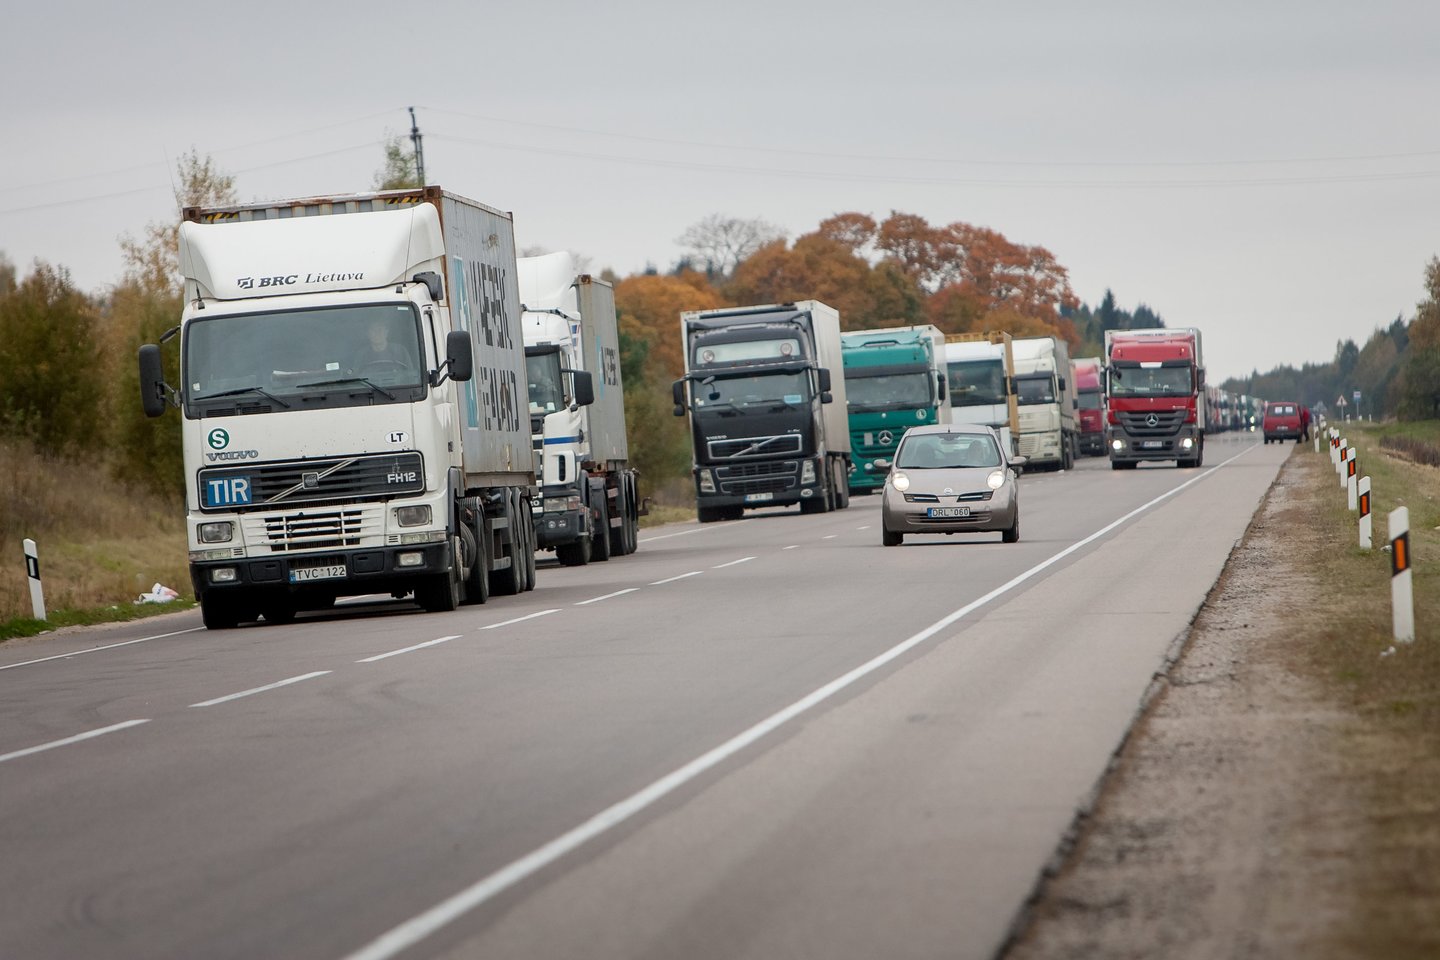 Ukrainoje registruotoms transporto priemonėms, kuriomis vežami kroviniai, leidžiama įvažiuoti į Lietuvos teritoriją ir vykti tranzitu per šalies teritoriją be leidimų iki 2022 metų pabaigos.<br>D.Umbraso nuotr.